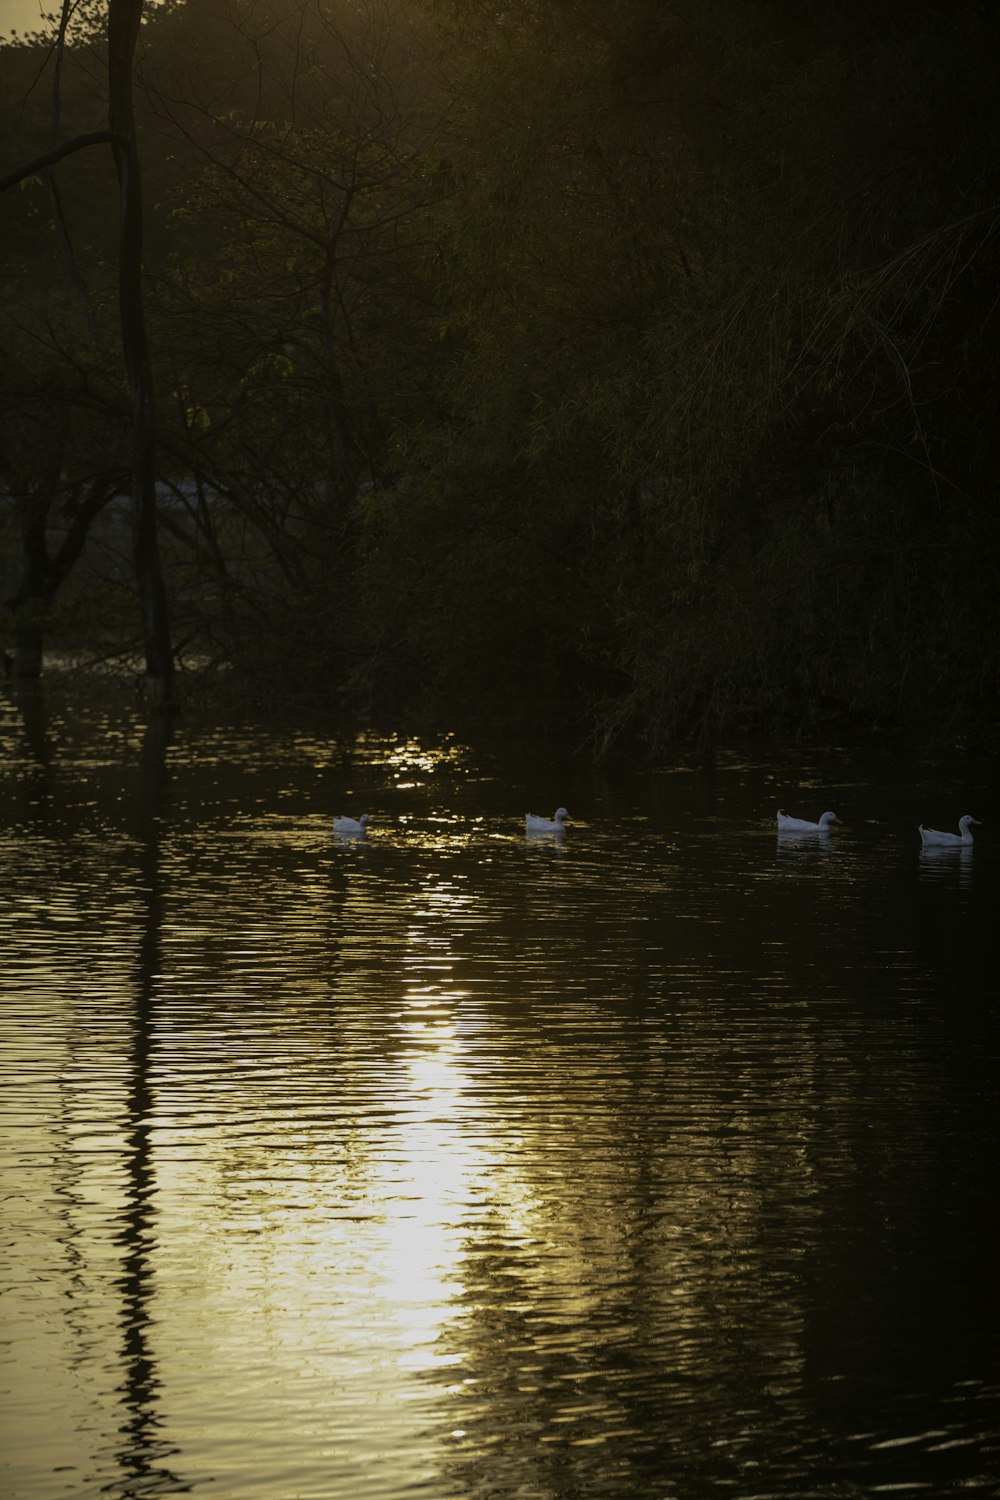 Un gruppo di anatre che galleggiano sulla cima di un lago